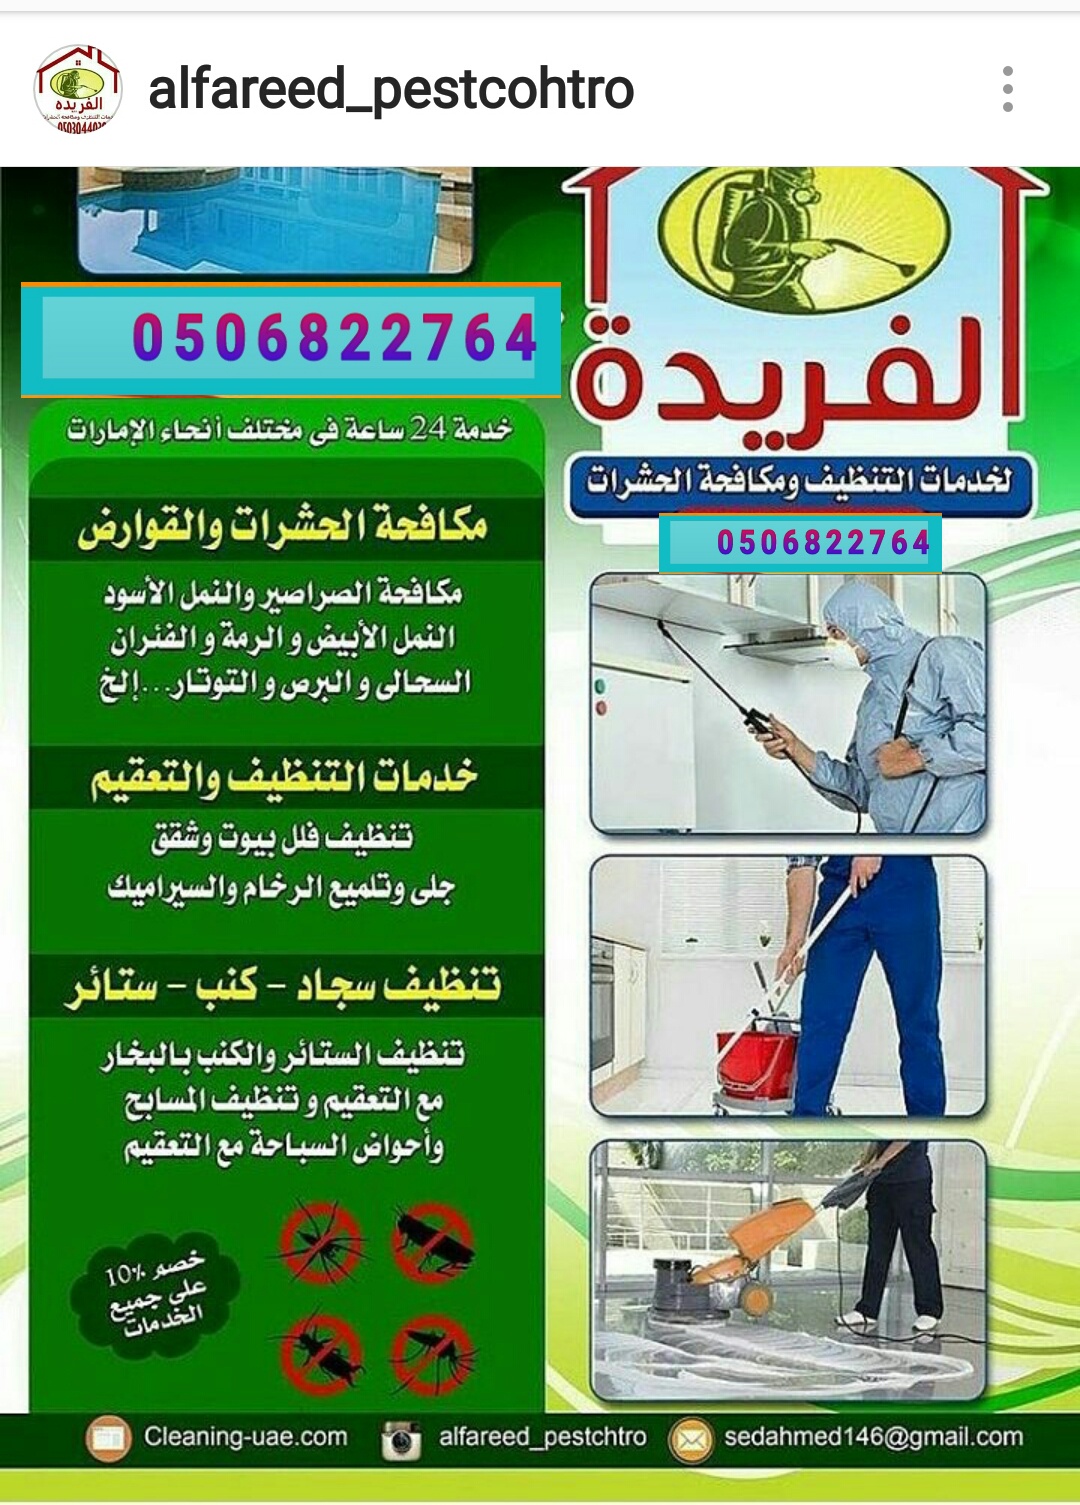 شركة الفريدة للتنظيف ومكافحة الحشرات في ابو ظبي 00971506822764 شركة تنظيف في ابو ظبي  P_783msw6w1